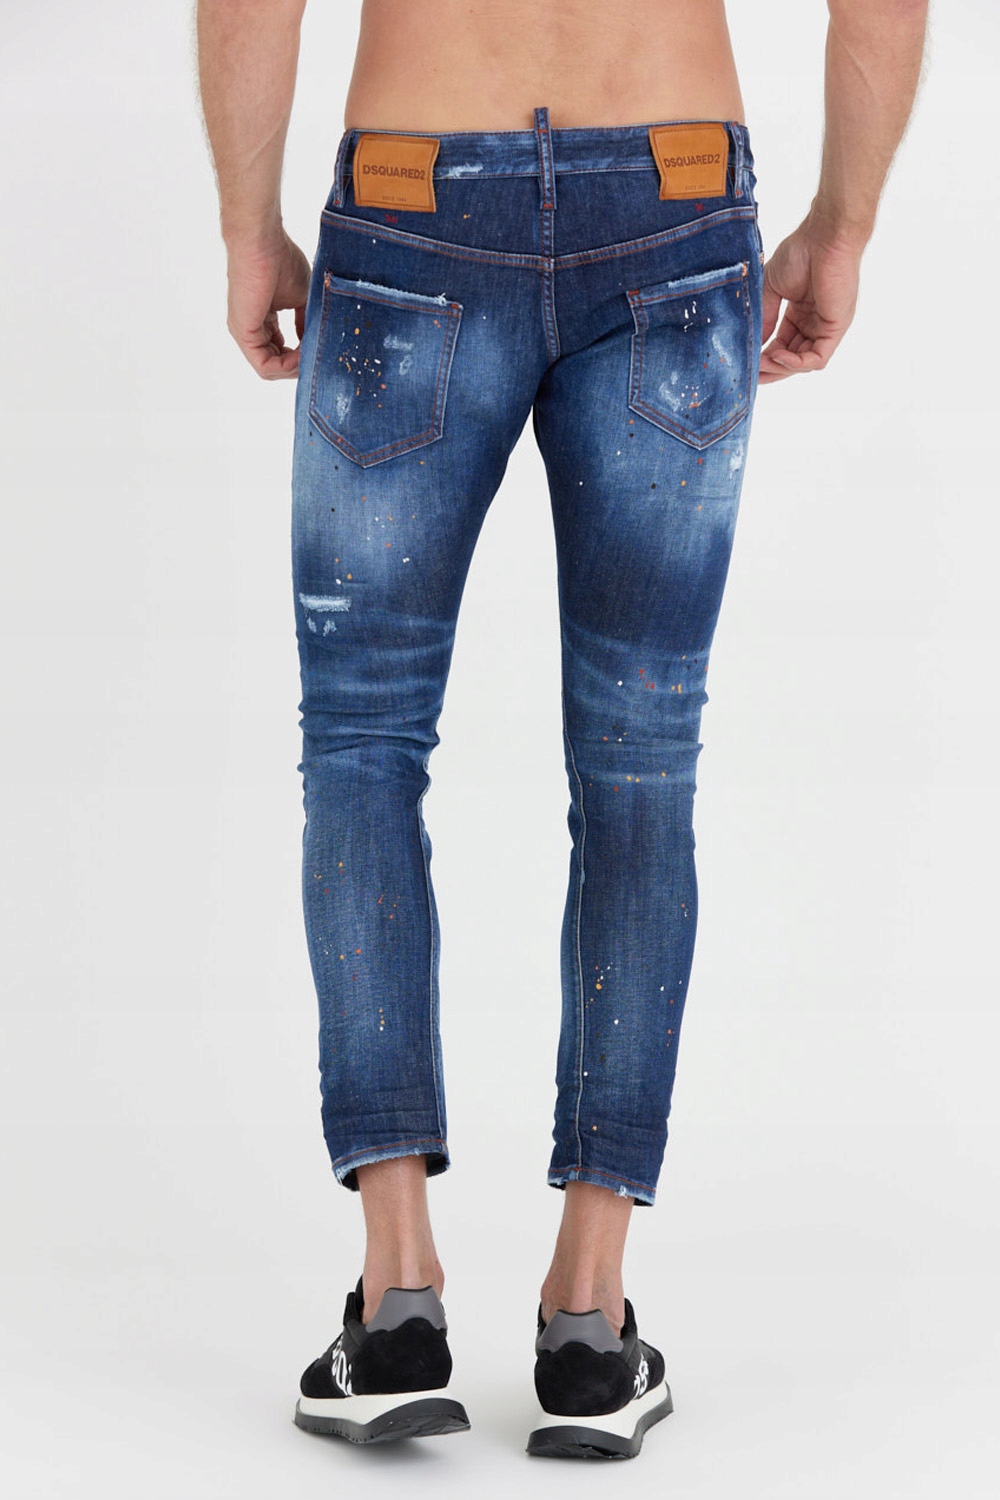 DSQUARED2 Granatowe jeansy SEXY TWIST JEAN 50 14435683297 - Allegro.pl